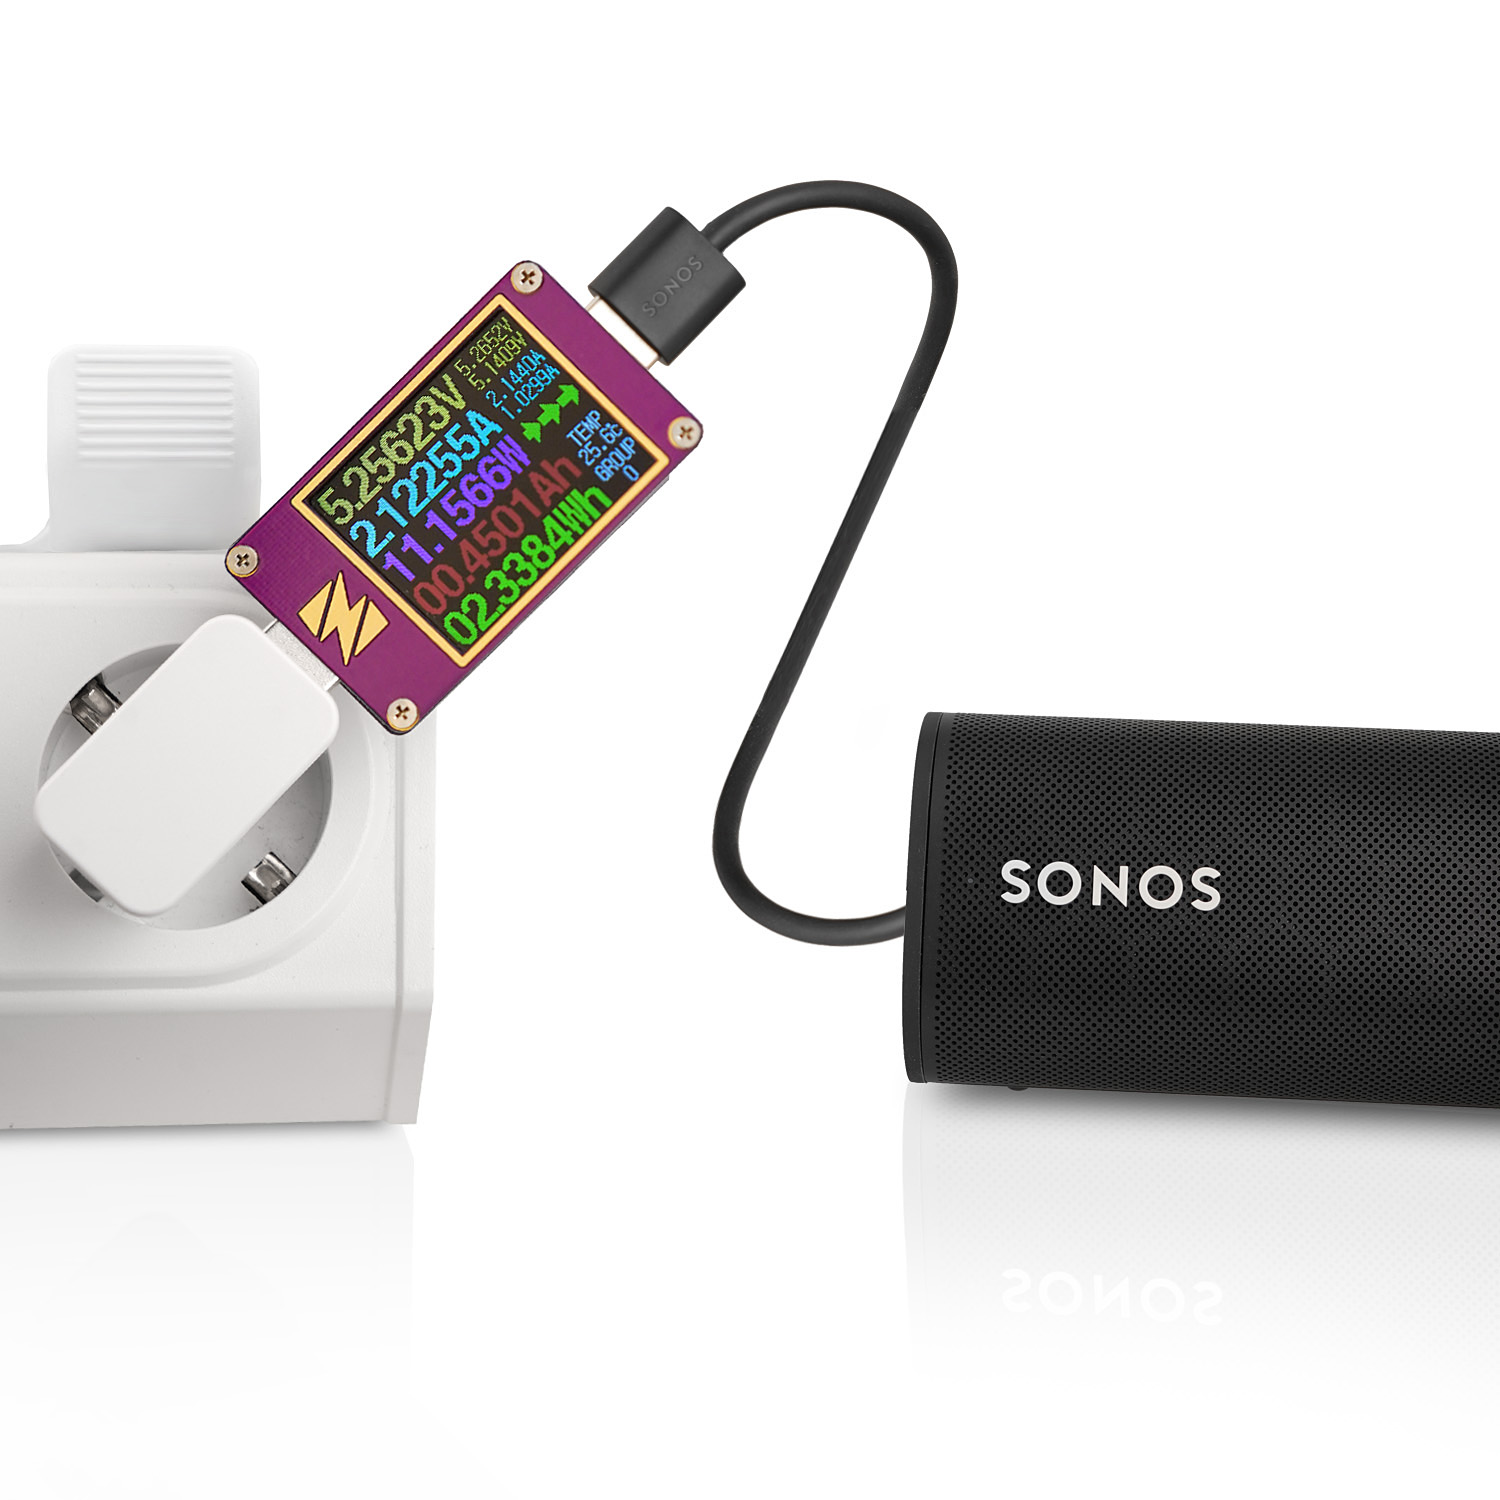 CHILI weiß Ladegerät Dual für Kabel 10W Roam, Dual 12W) USB-C Netzteil für Sonos (2.4A, WICKED USB auf Netzteil ersetzt USB-A USB